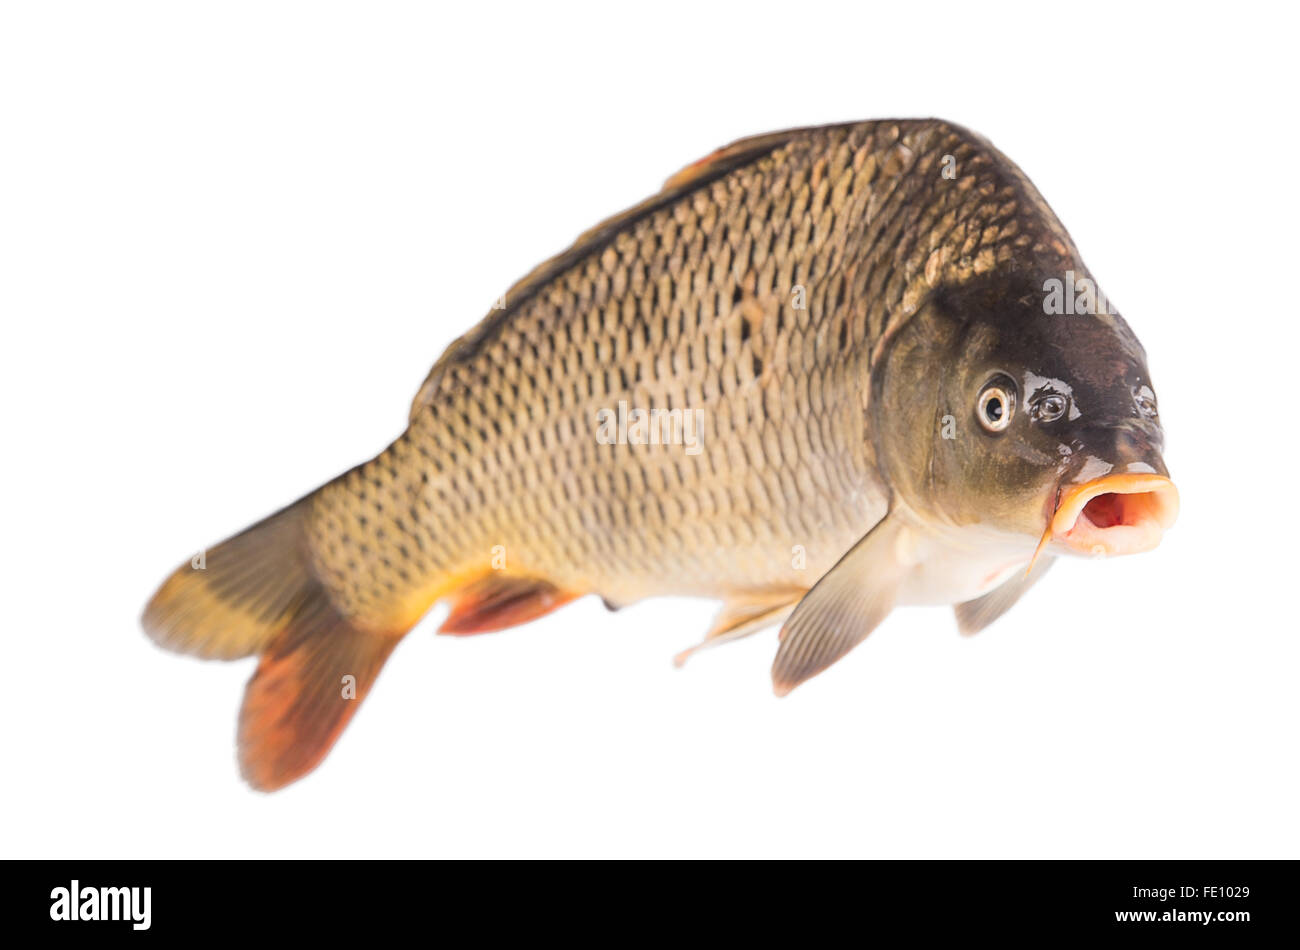 Carpa pesce isolato su sfondo bianco Foto Stock